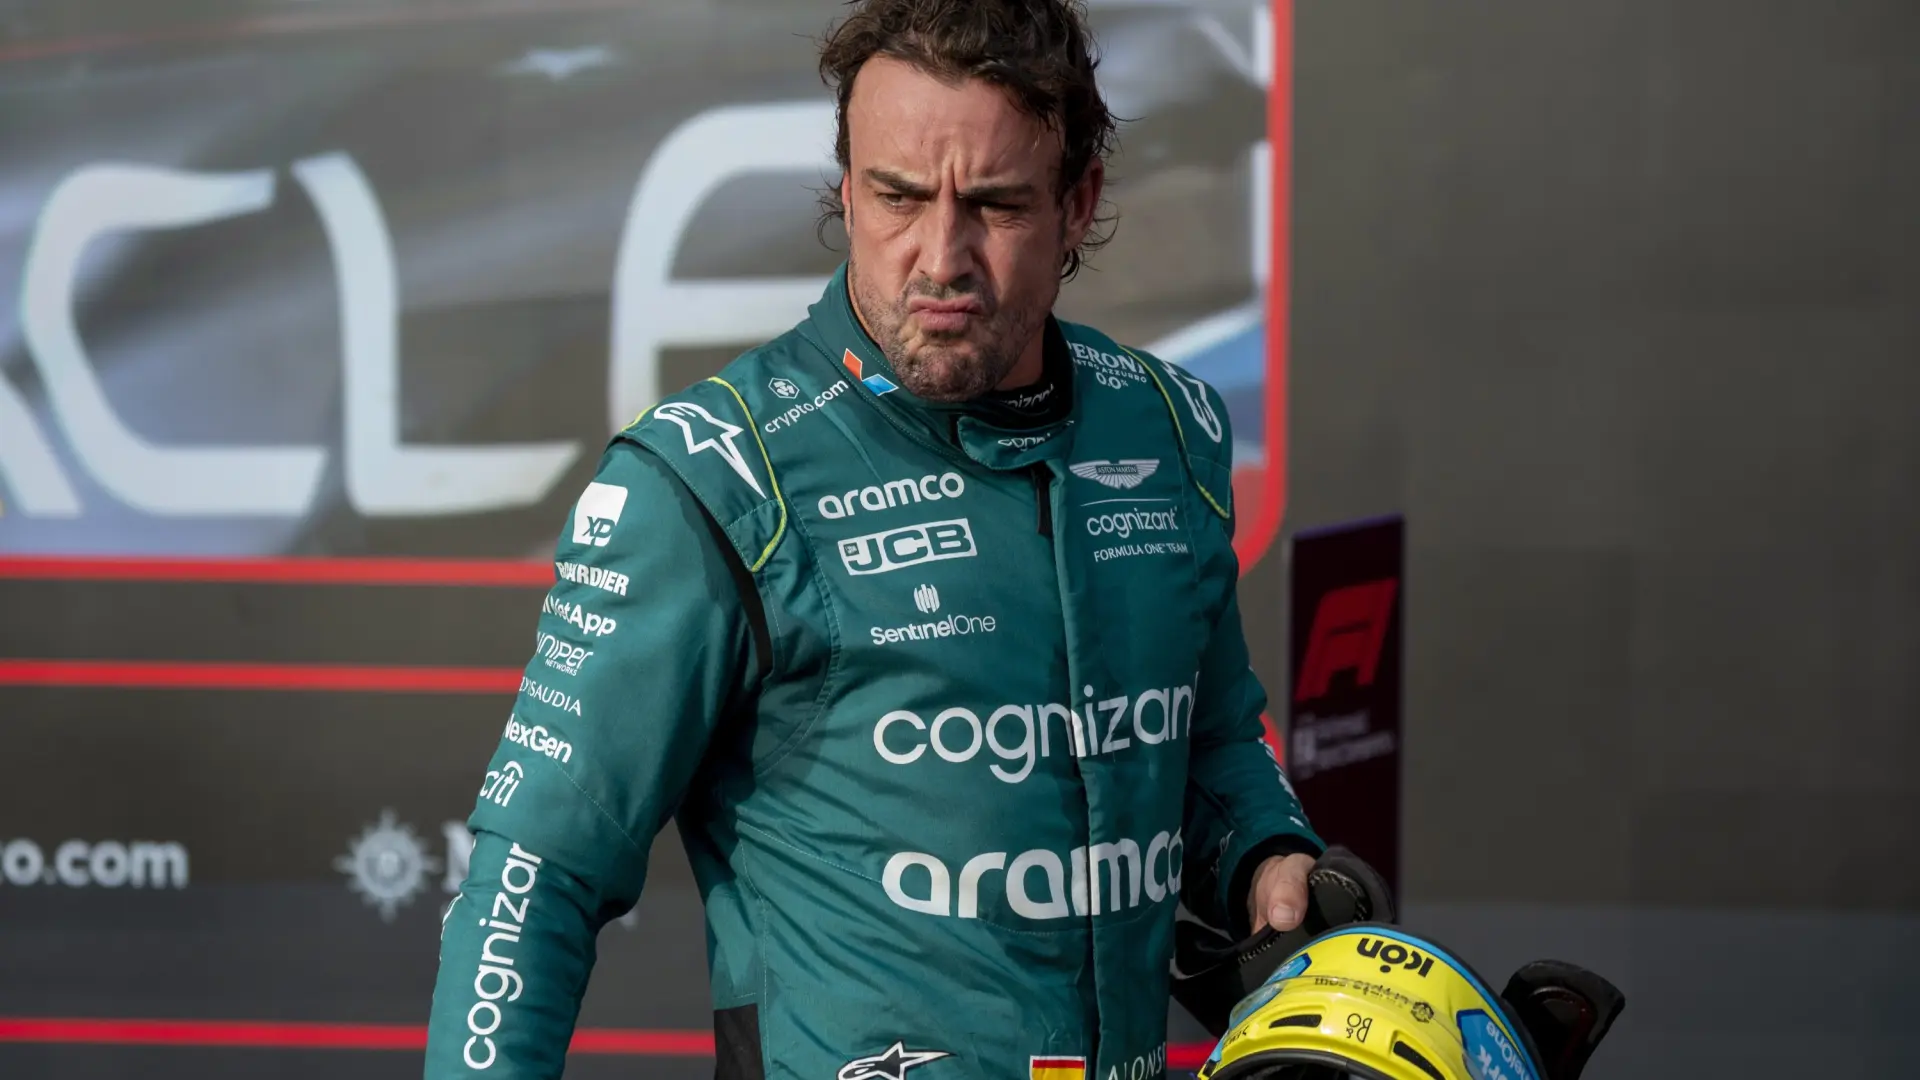 La rajada de Fernando Alonso sobre la maniobra de Lewis Hamilton: "No decidirán nada porque no es español"